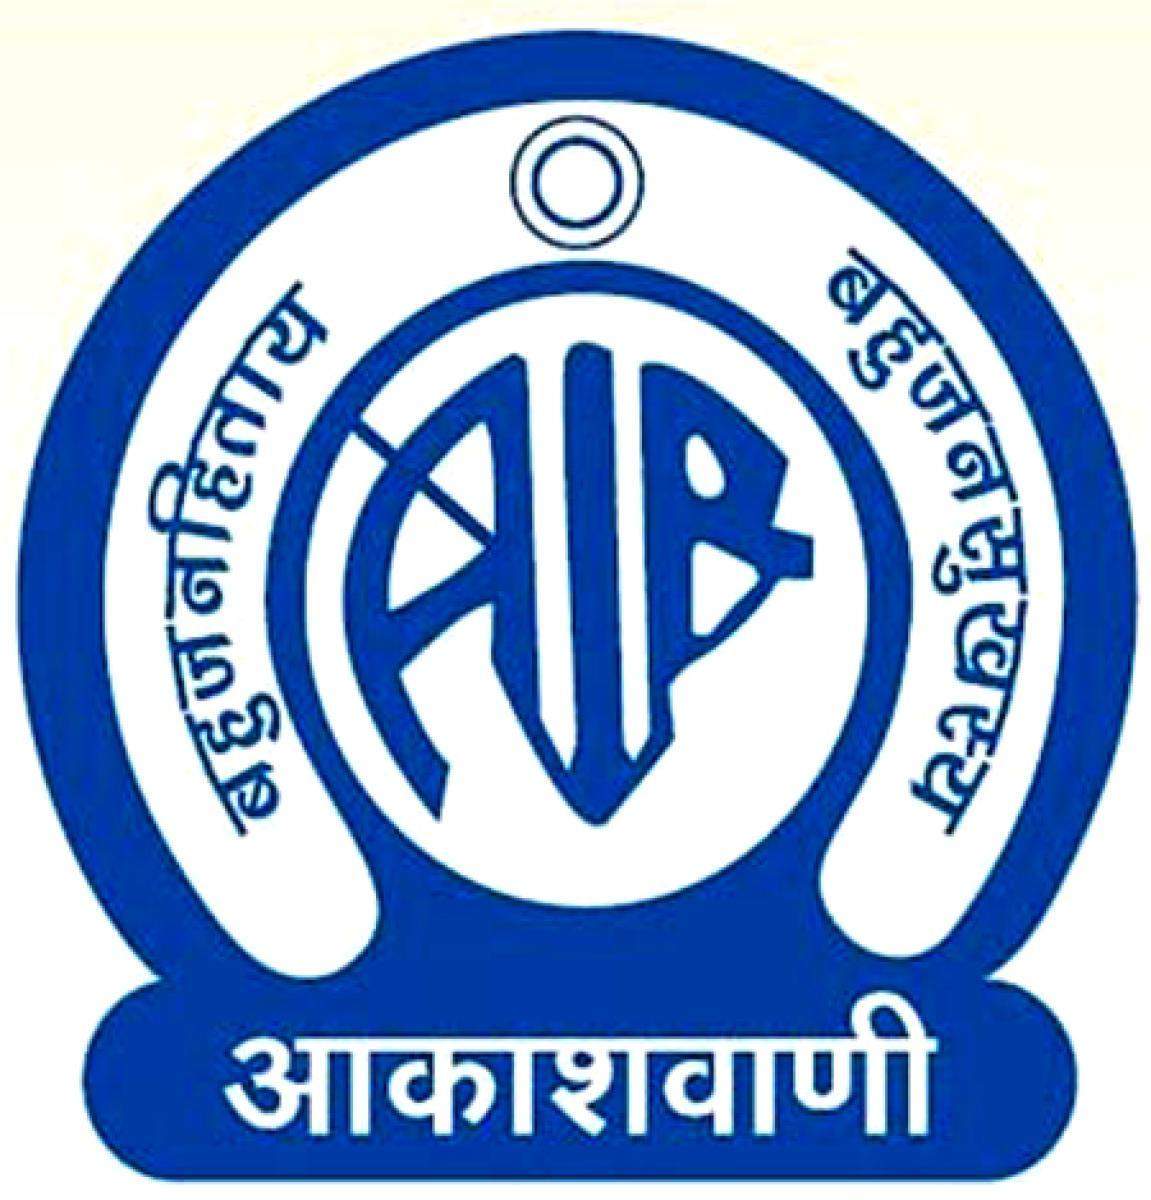 AIR: ऑल इंडिया रेडियो ने निकाली भर्तियां, जानें आवेदन की पूरी प्रक्रिया